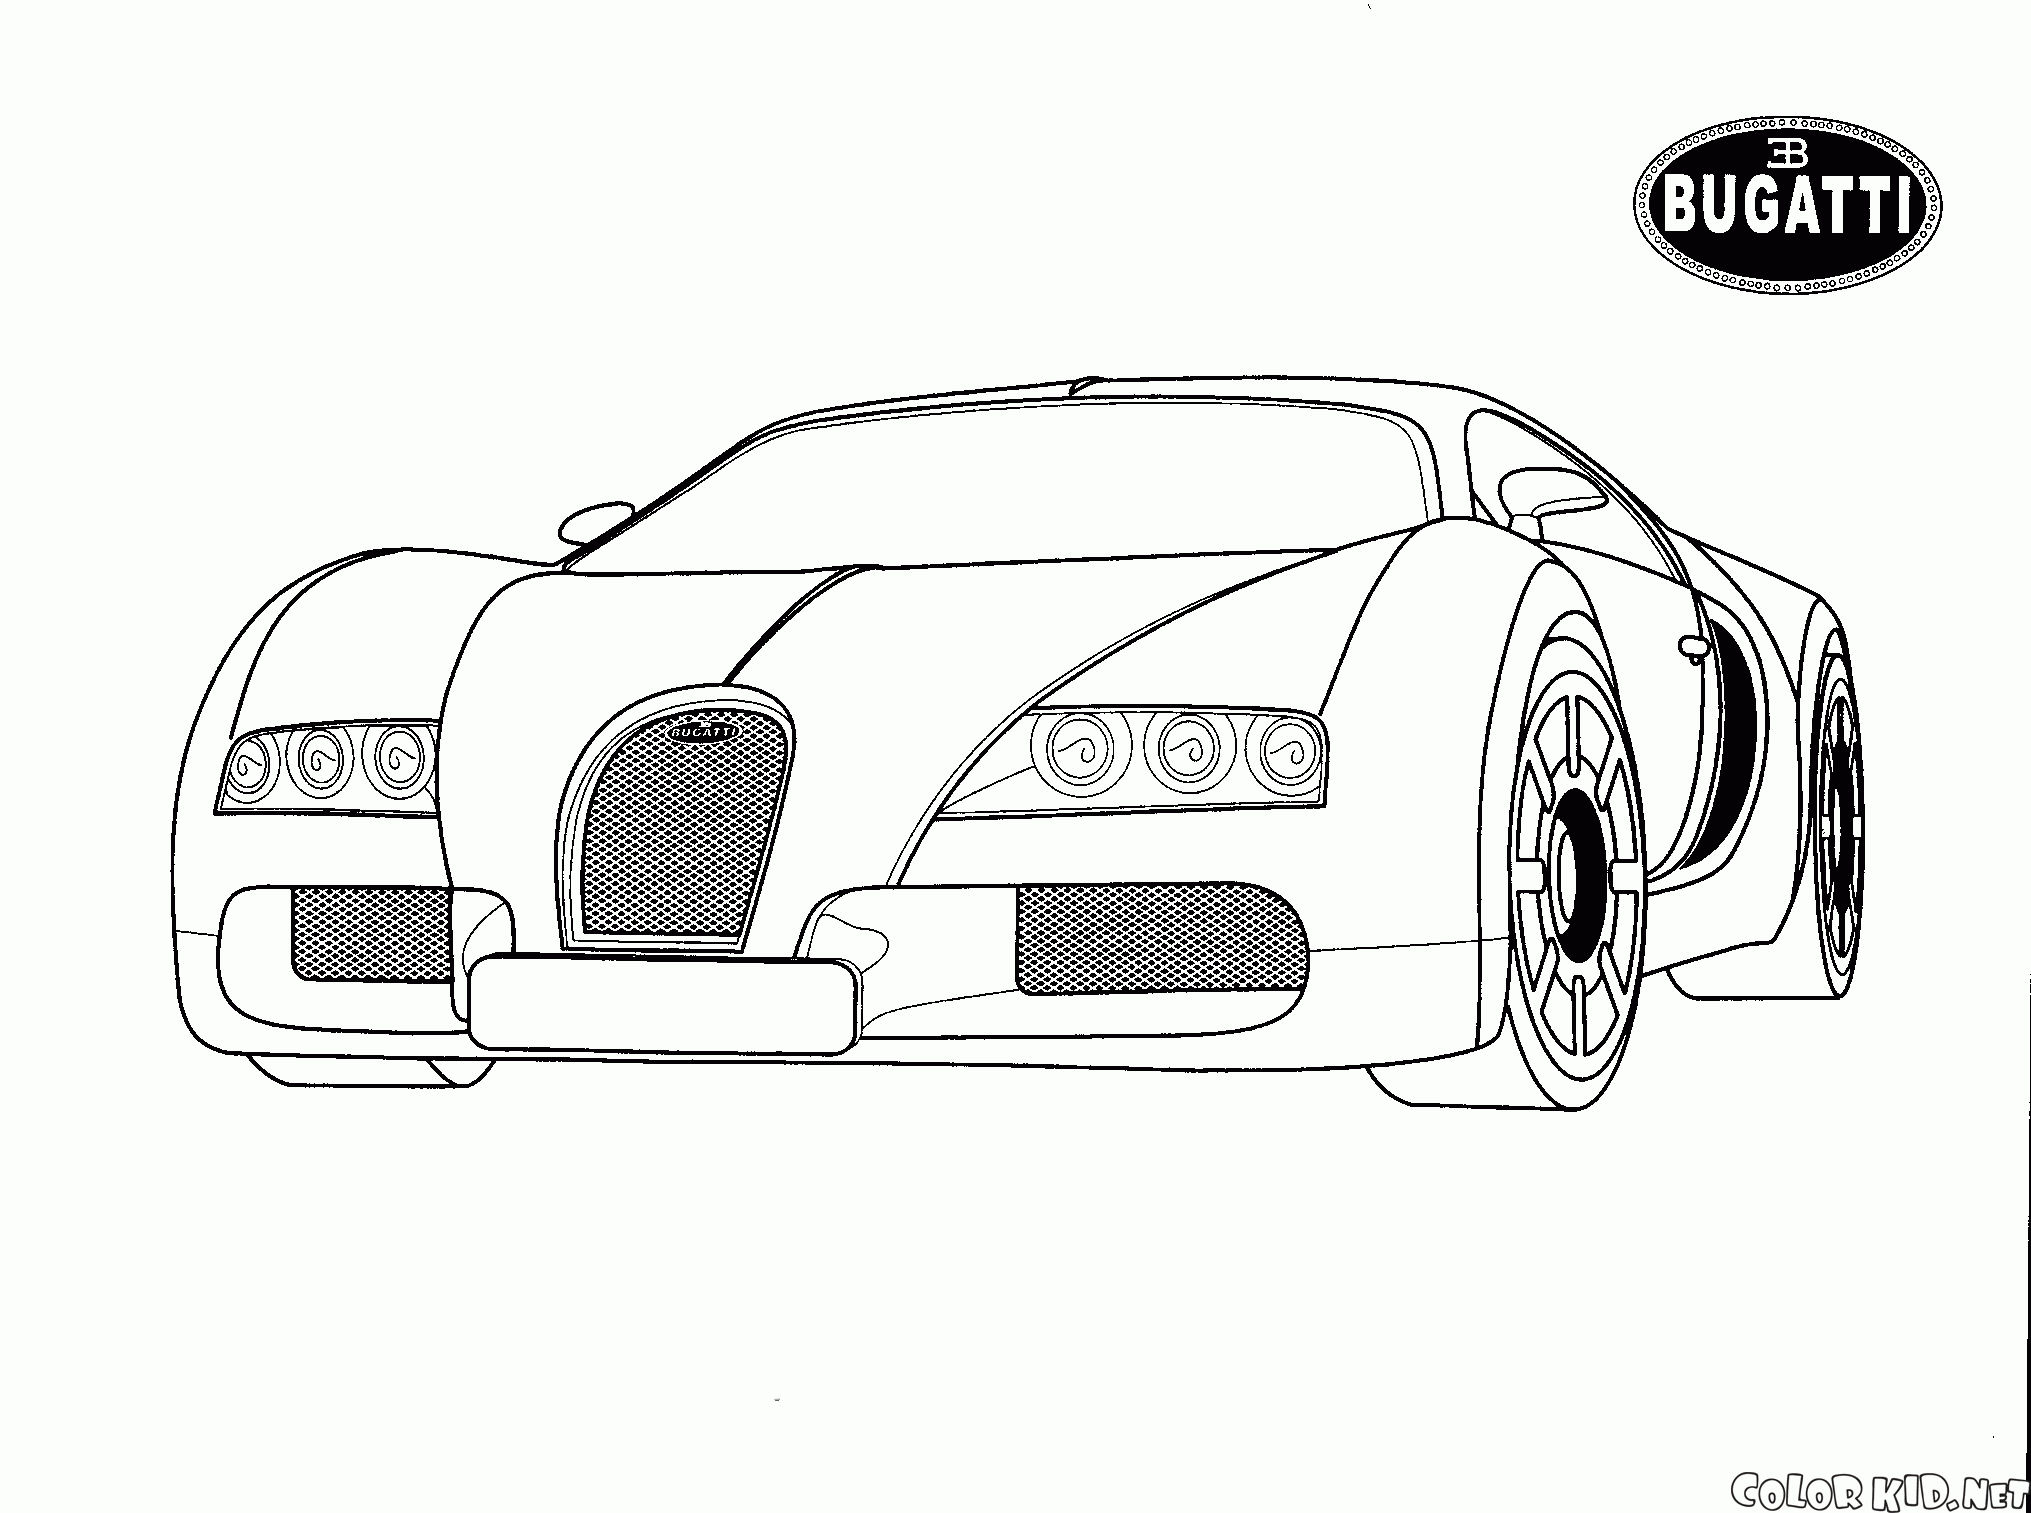 Bugatti (Italy)